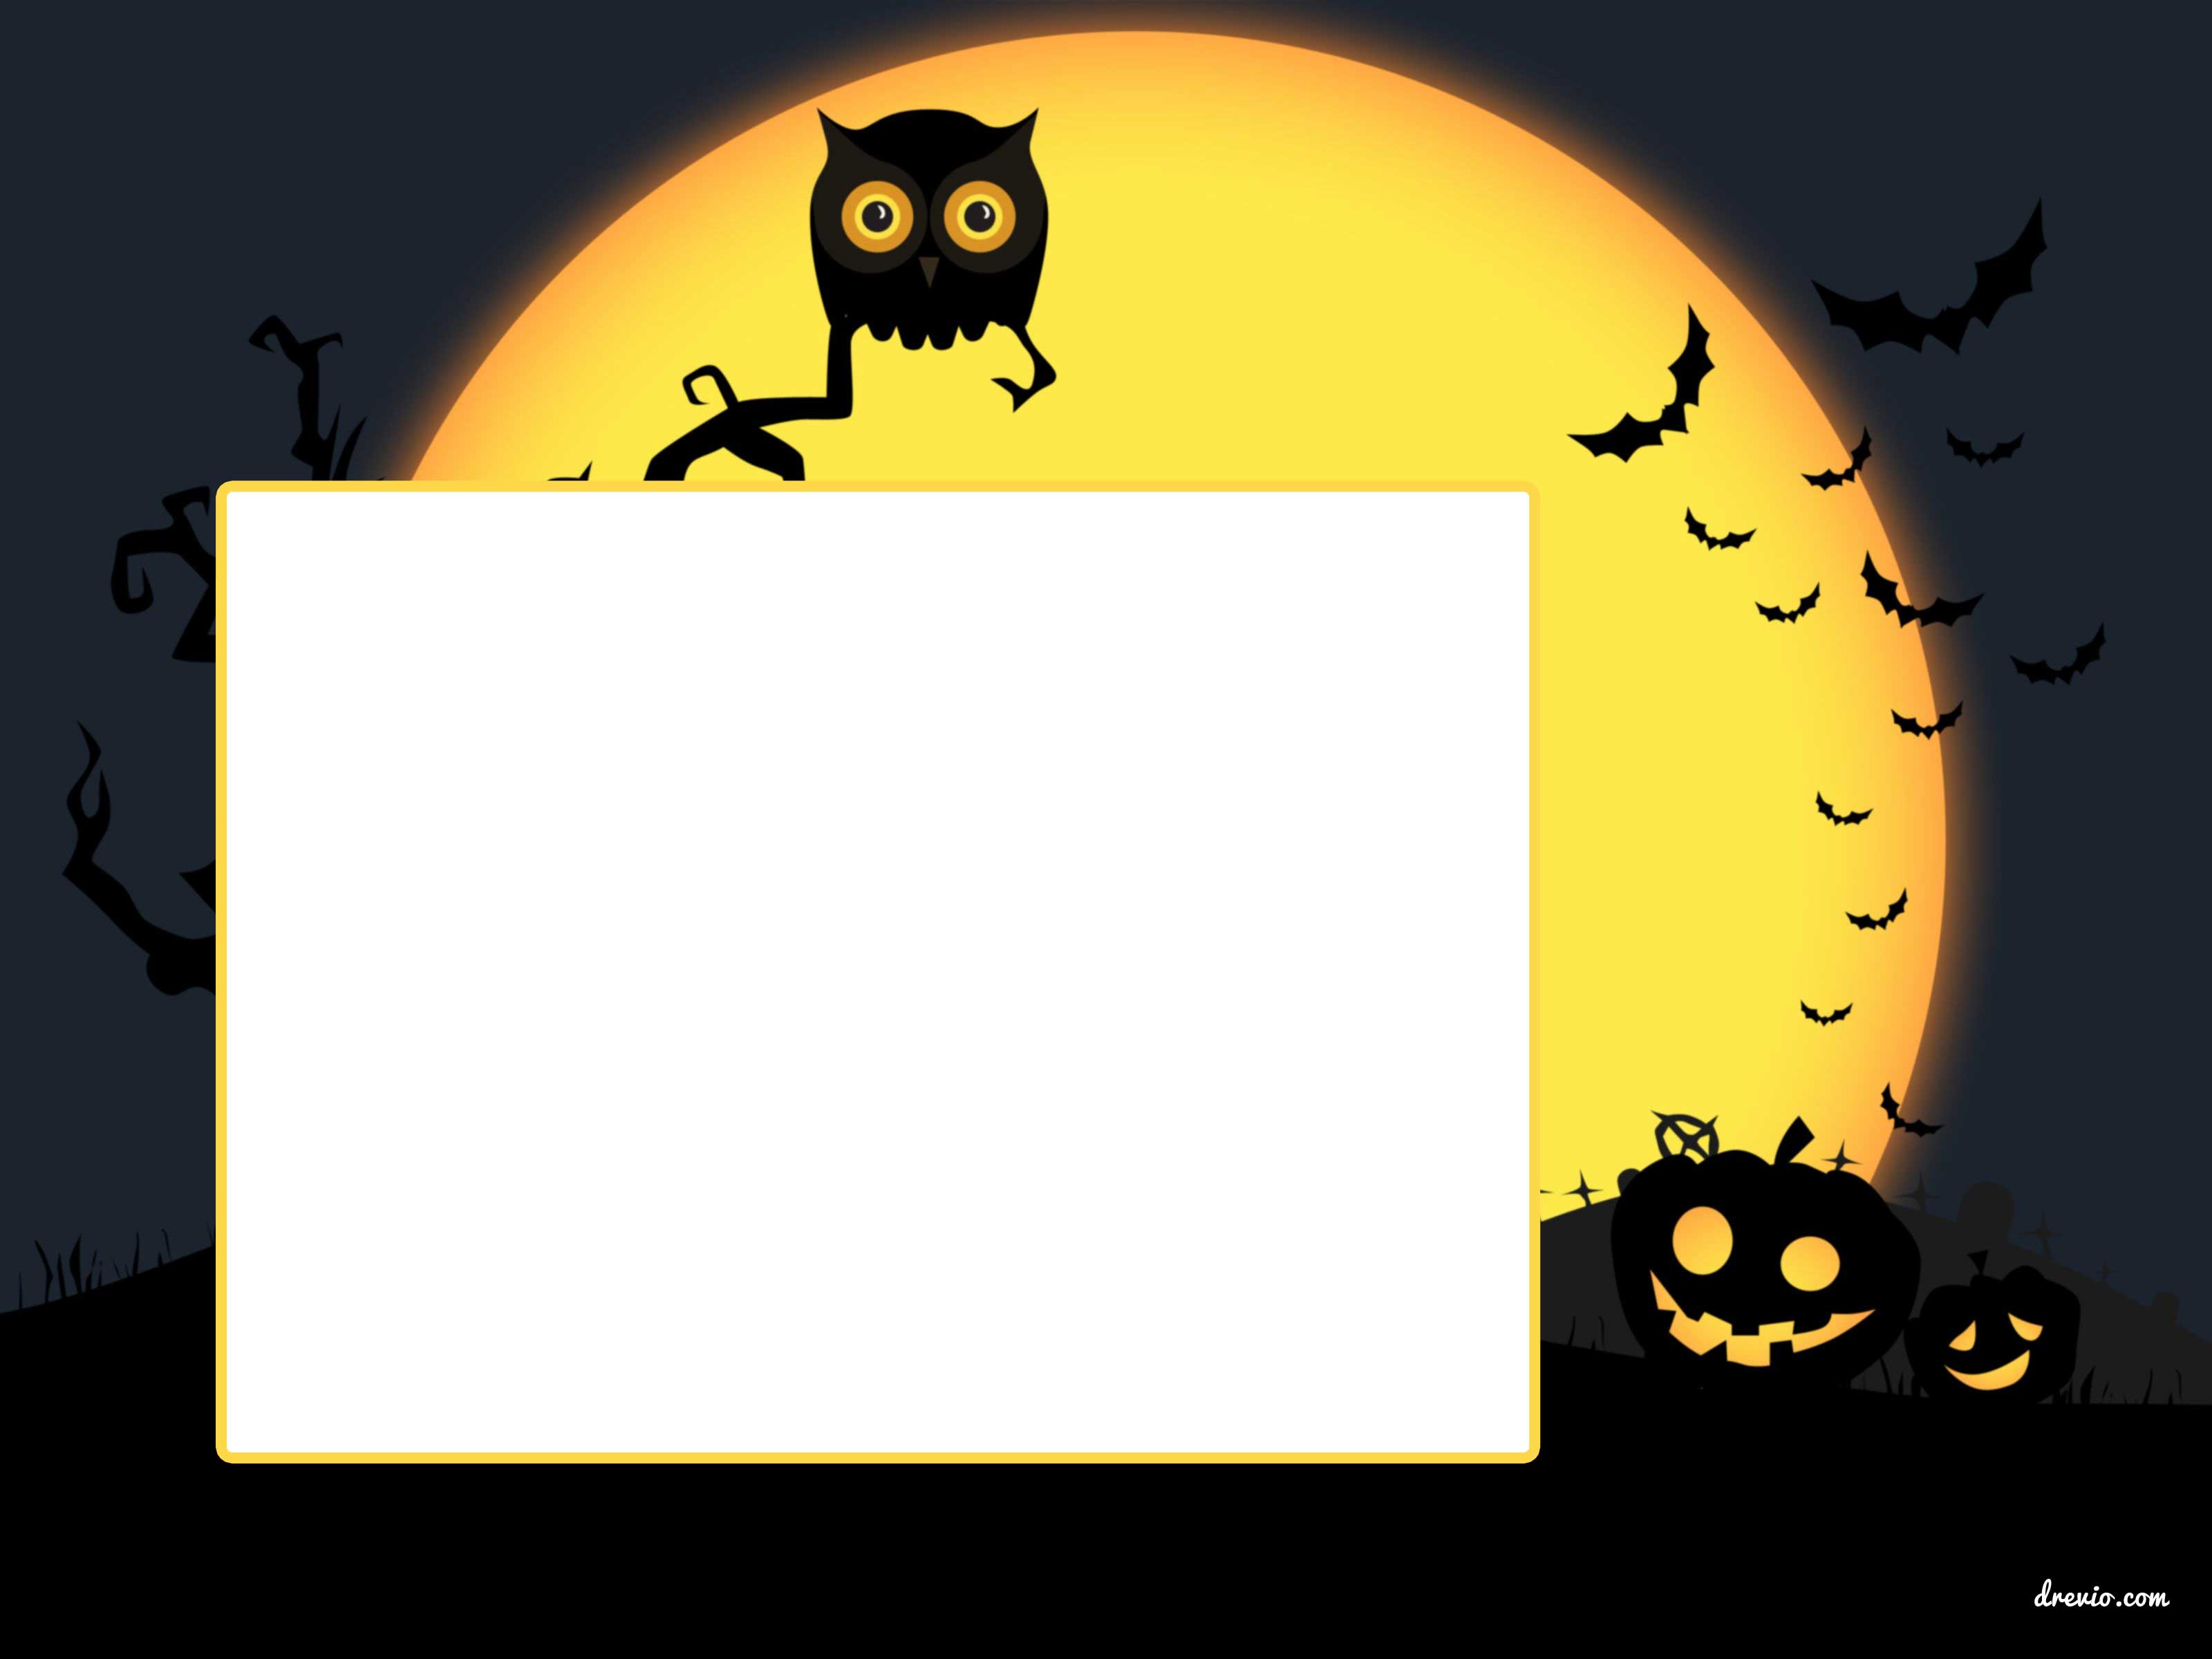 FREE-PRintable-Halloween-Invitation-Owl